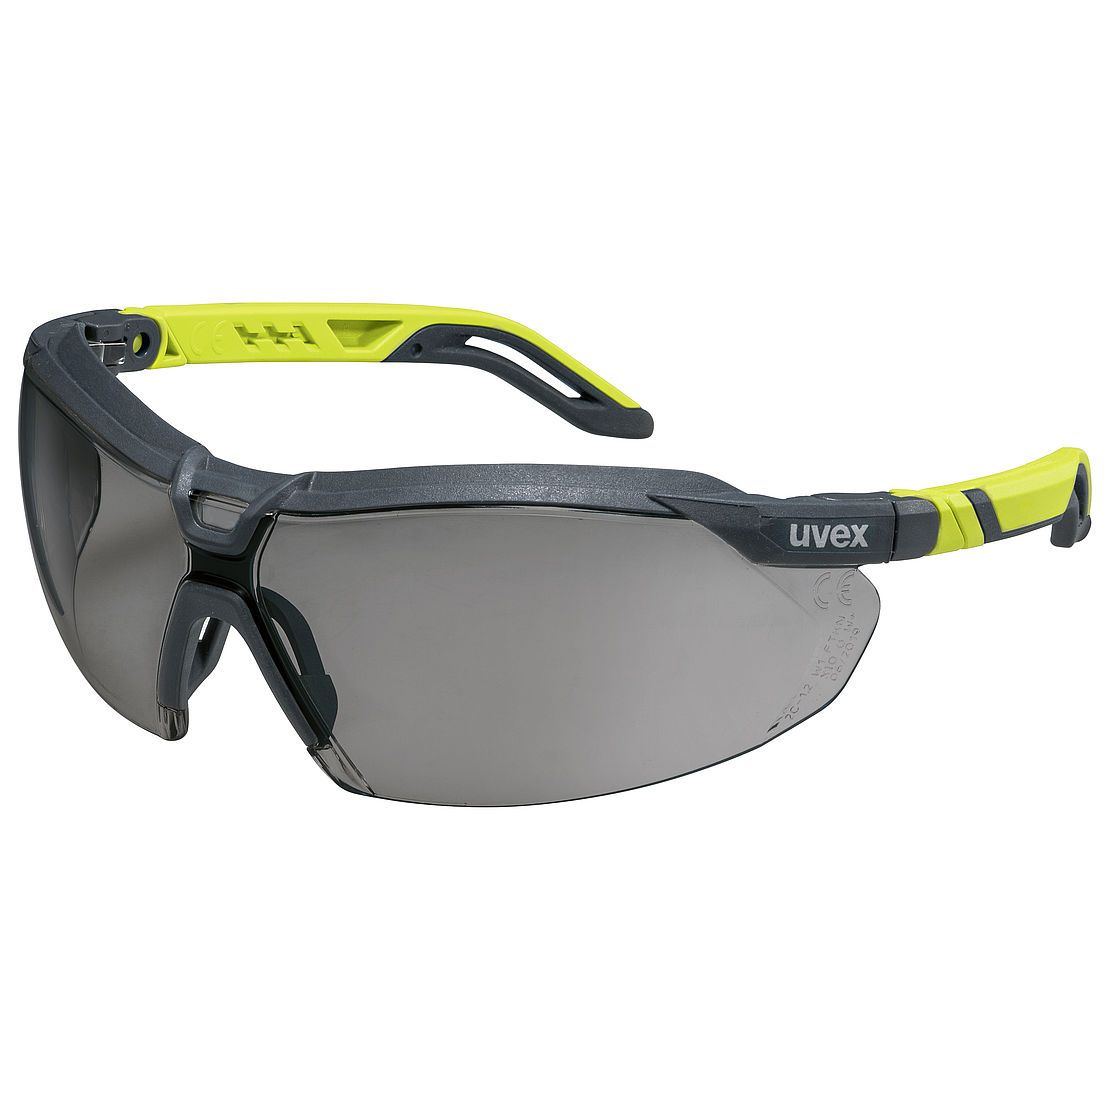 Uvex i-5 Safety Glasses Grey and Lime Frame Grey HC-AF Lens Tactical Distributors Ltd New Zealand